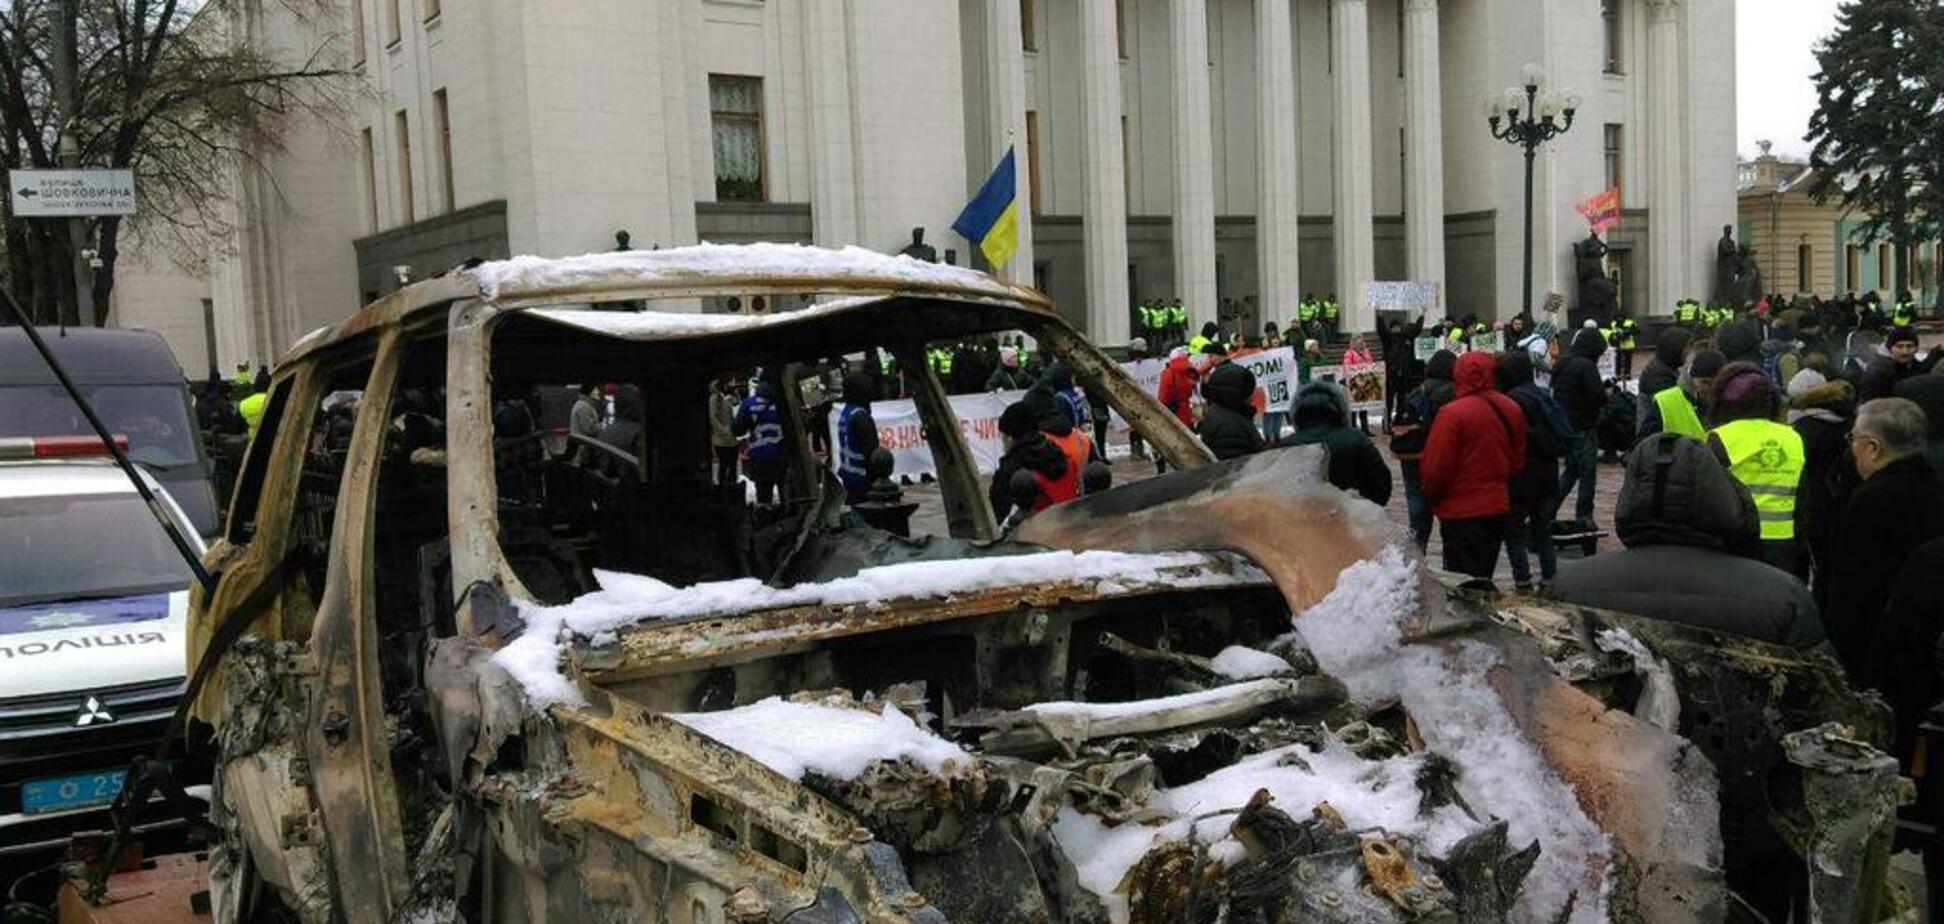 Вдарить по кожному українцеві: чим загрожує свавілля ''євробляхерів''